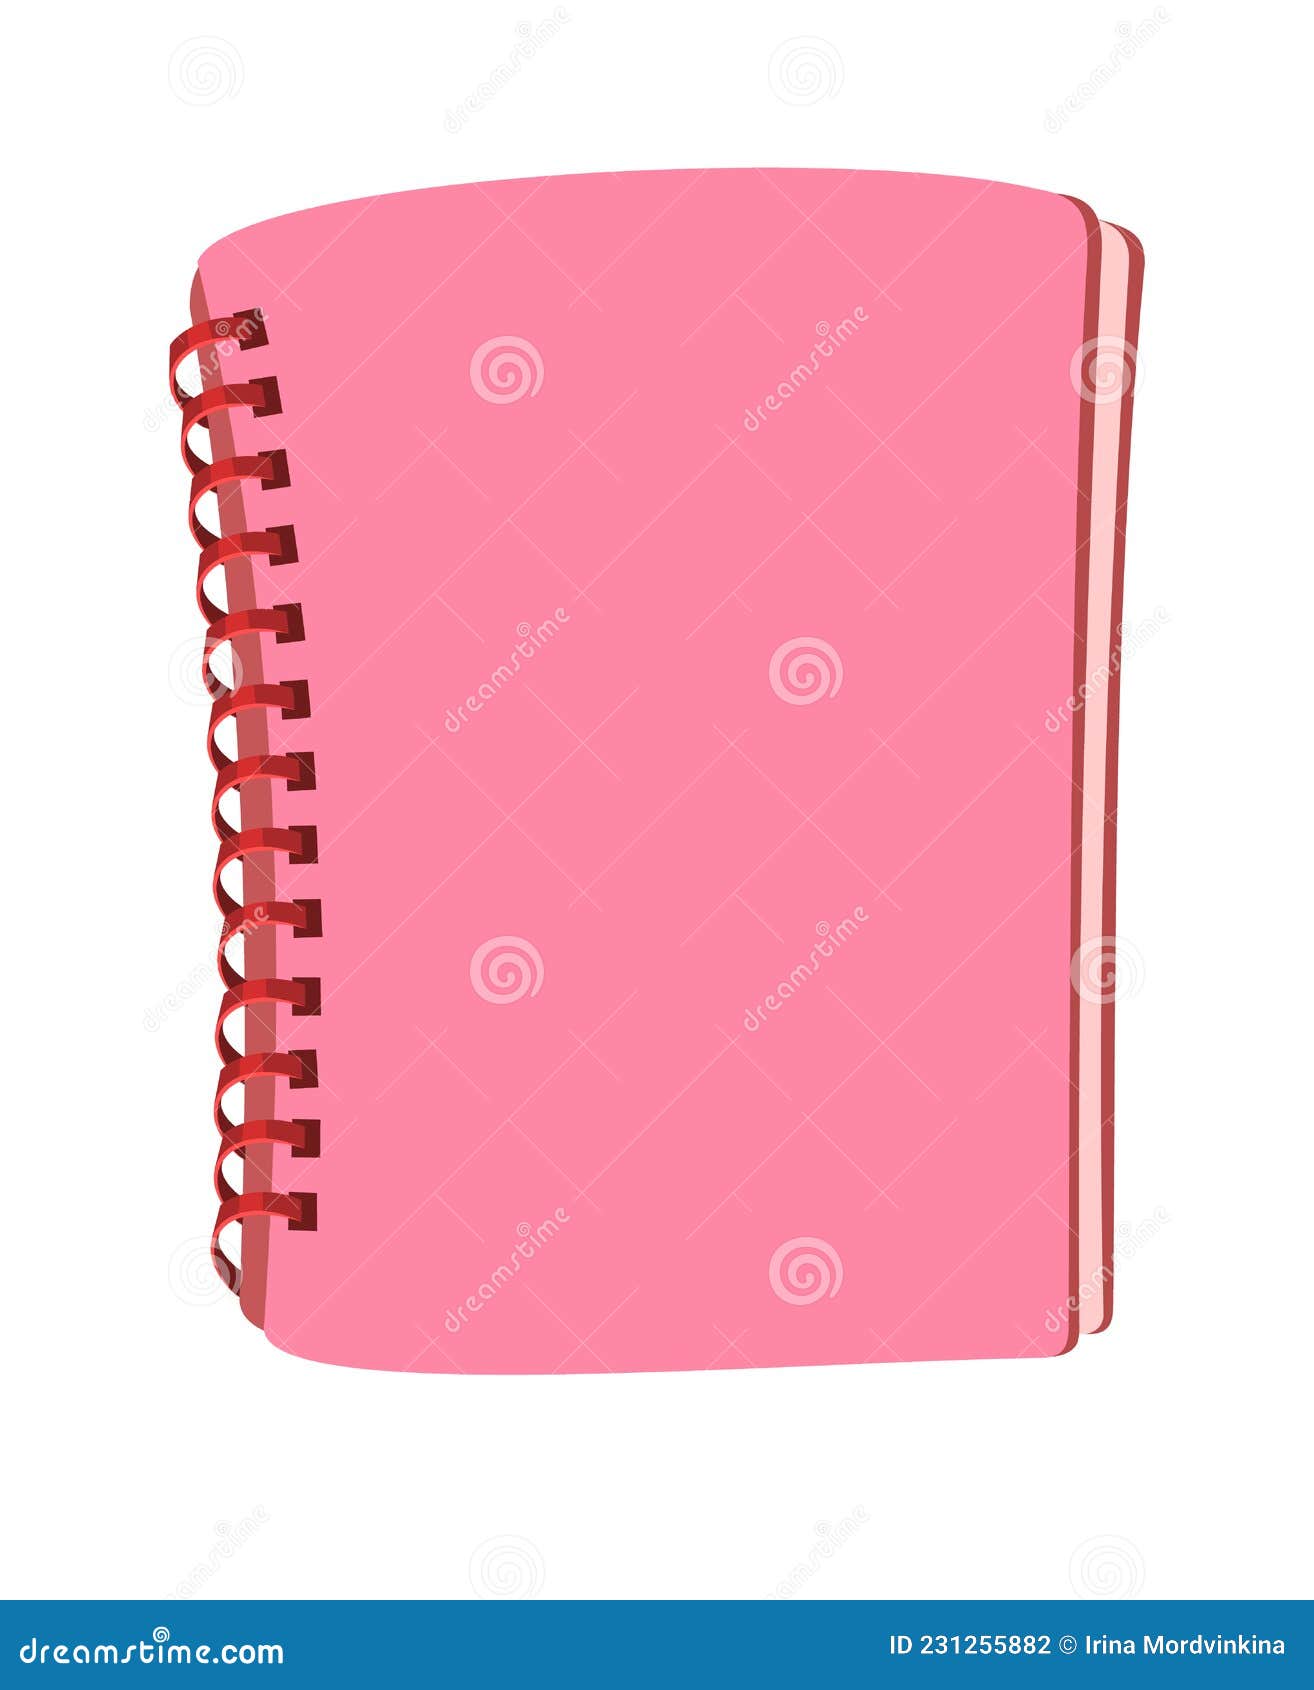 Với sắc hồng tươi tắn và thiết kế đơn giản nhưng đầy thú vị, quyển sổ tay màu hồng này sẽ là sự lựa chọn hoàn hảo cho những người yêu thích viết lách và tô màu. Khám phá quyển sổ tay đáng yêu này để giúp bạn tăng cường sự sáng tạo và hứng thú trong công việc và cuộc sống. 